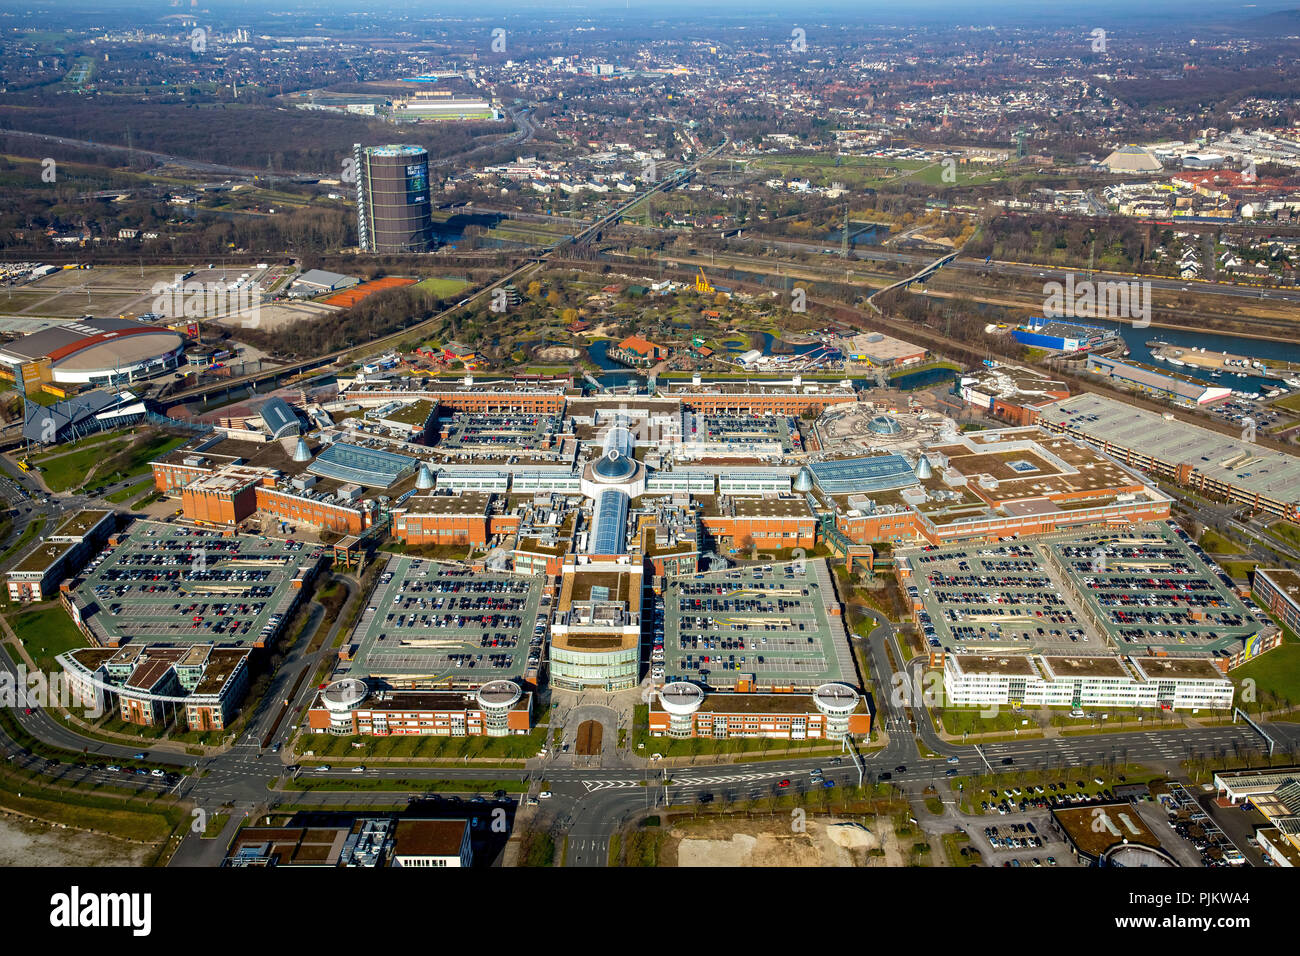 Centro Oberhausen, shopping center, l'un des plus grands centres commerciaux en Europe, shopping mall, Oberhausen, Ruhr, Rhénanie du Nord-Westphalie, Allemagne Banque D'Images